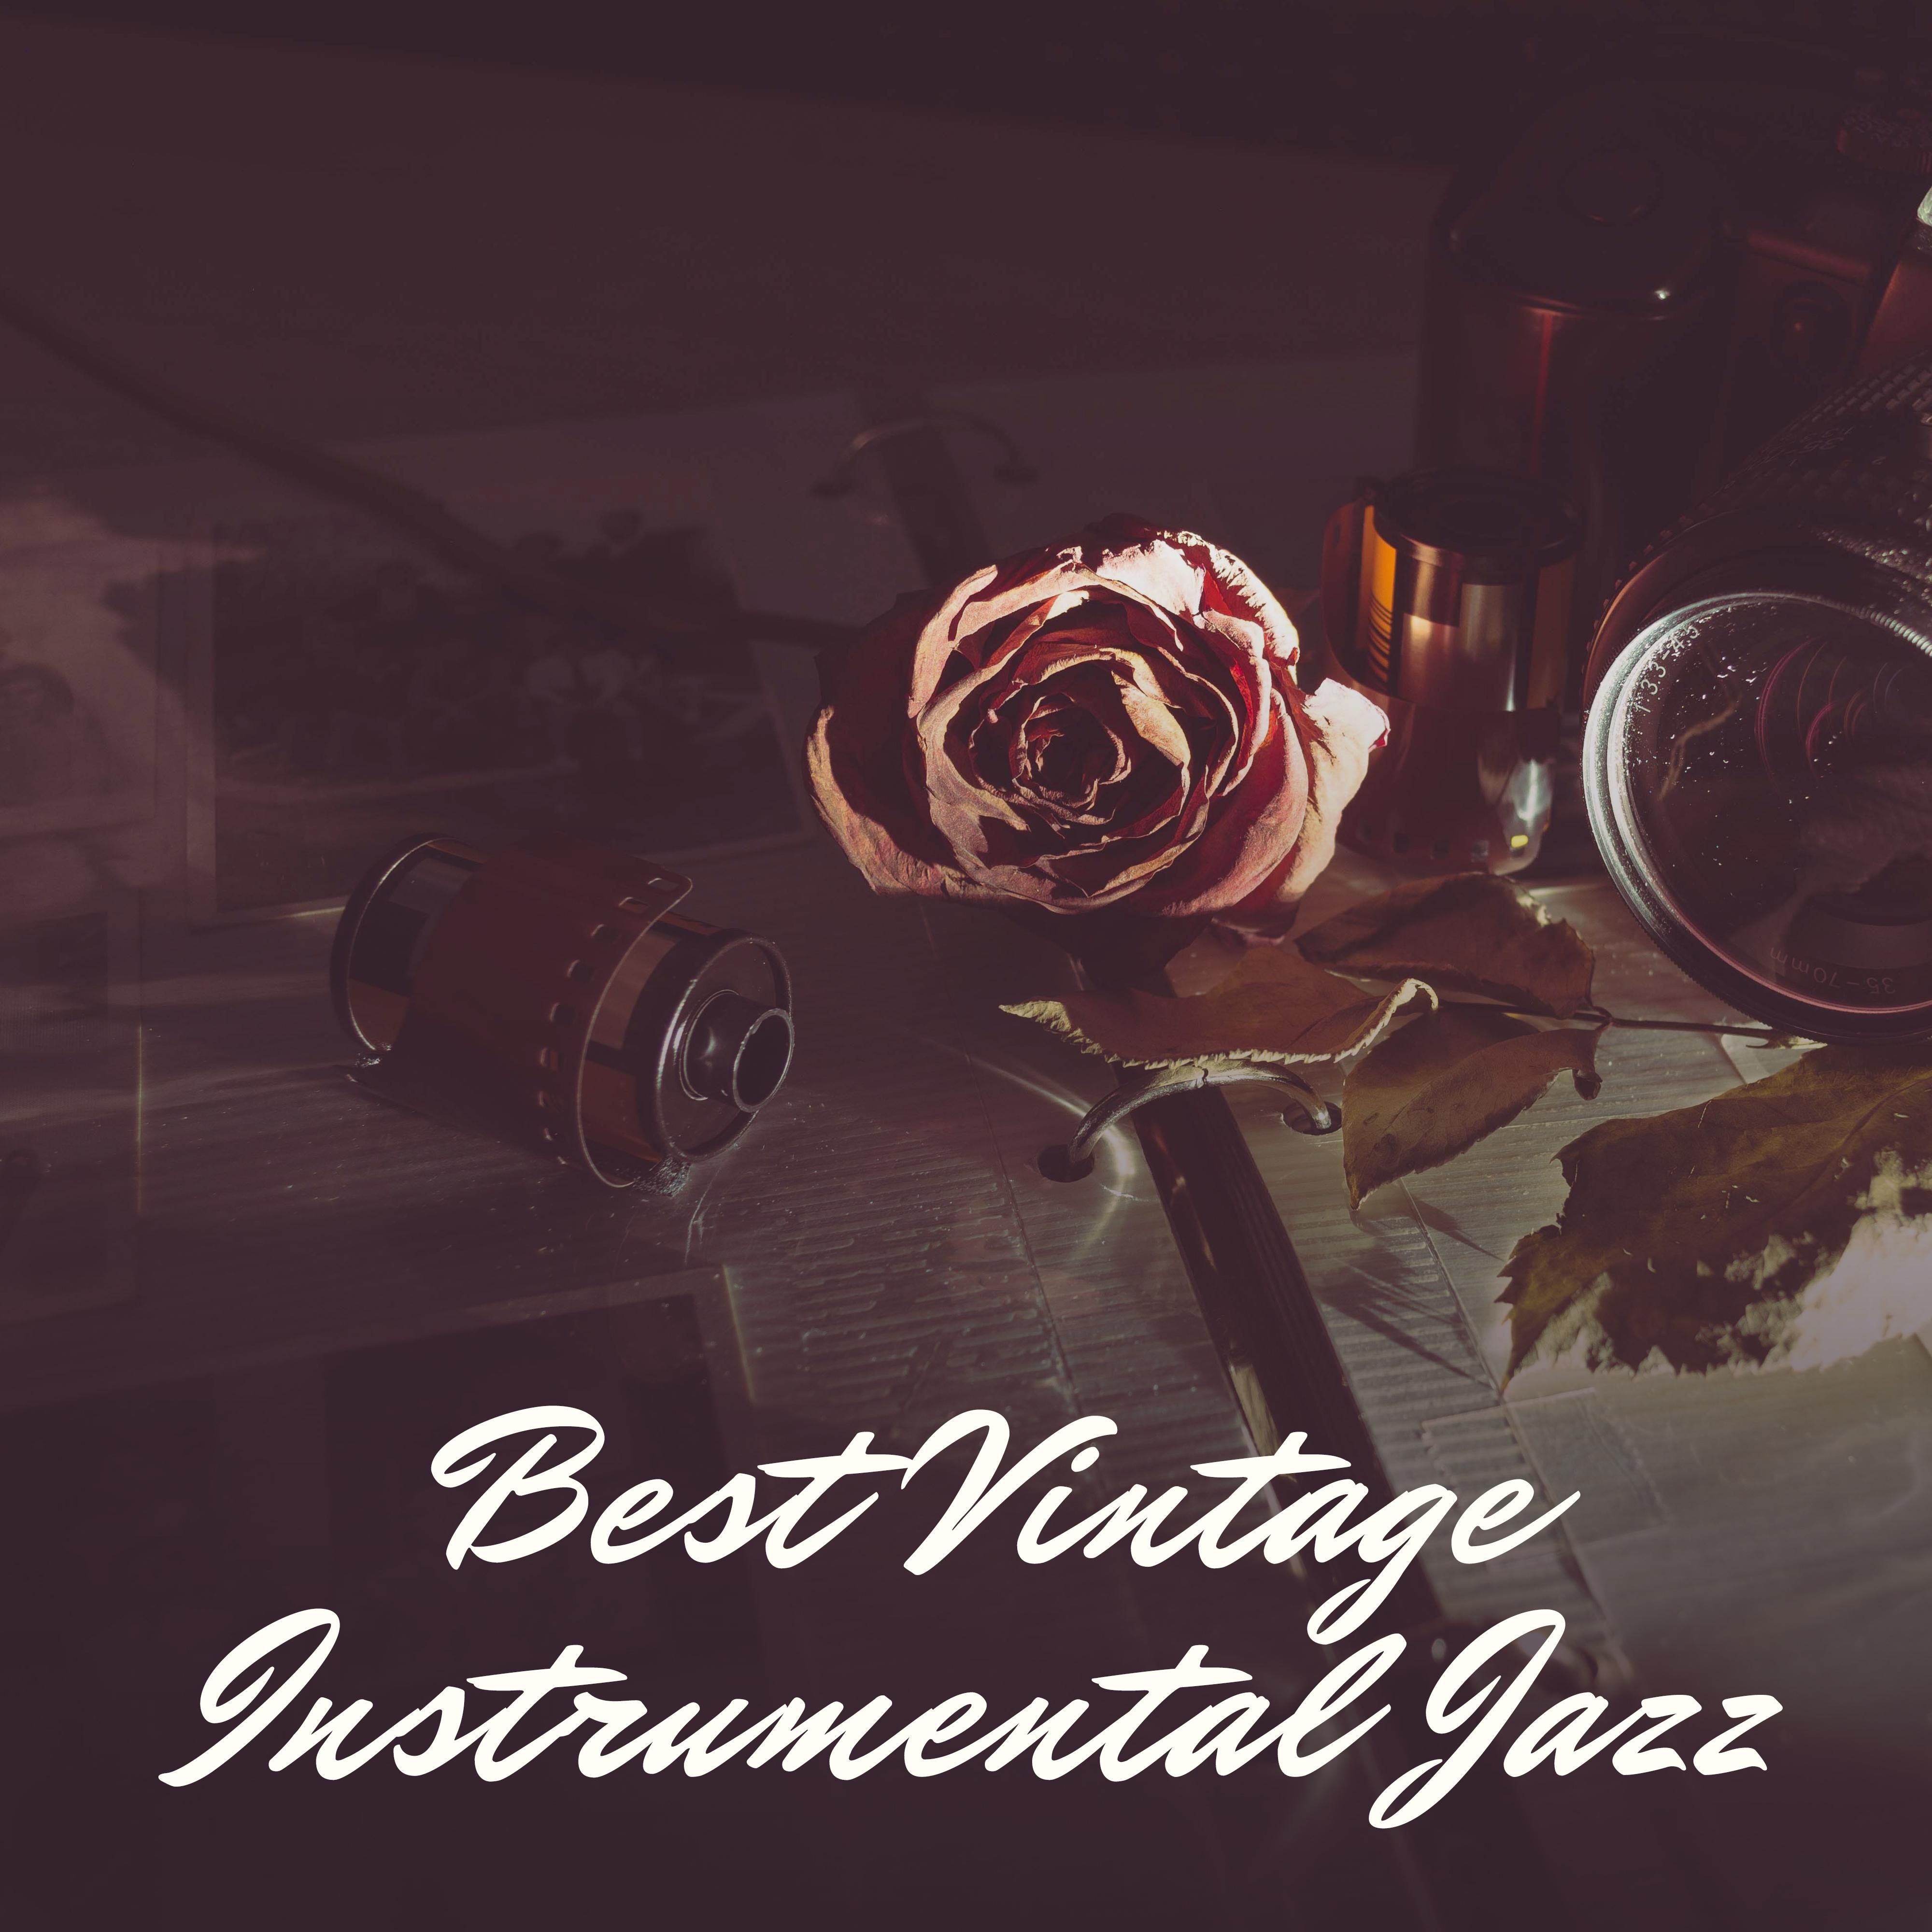 Best Vintage Instrumental Jazz